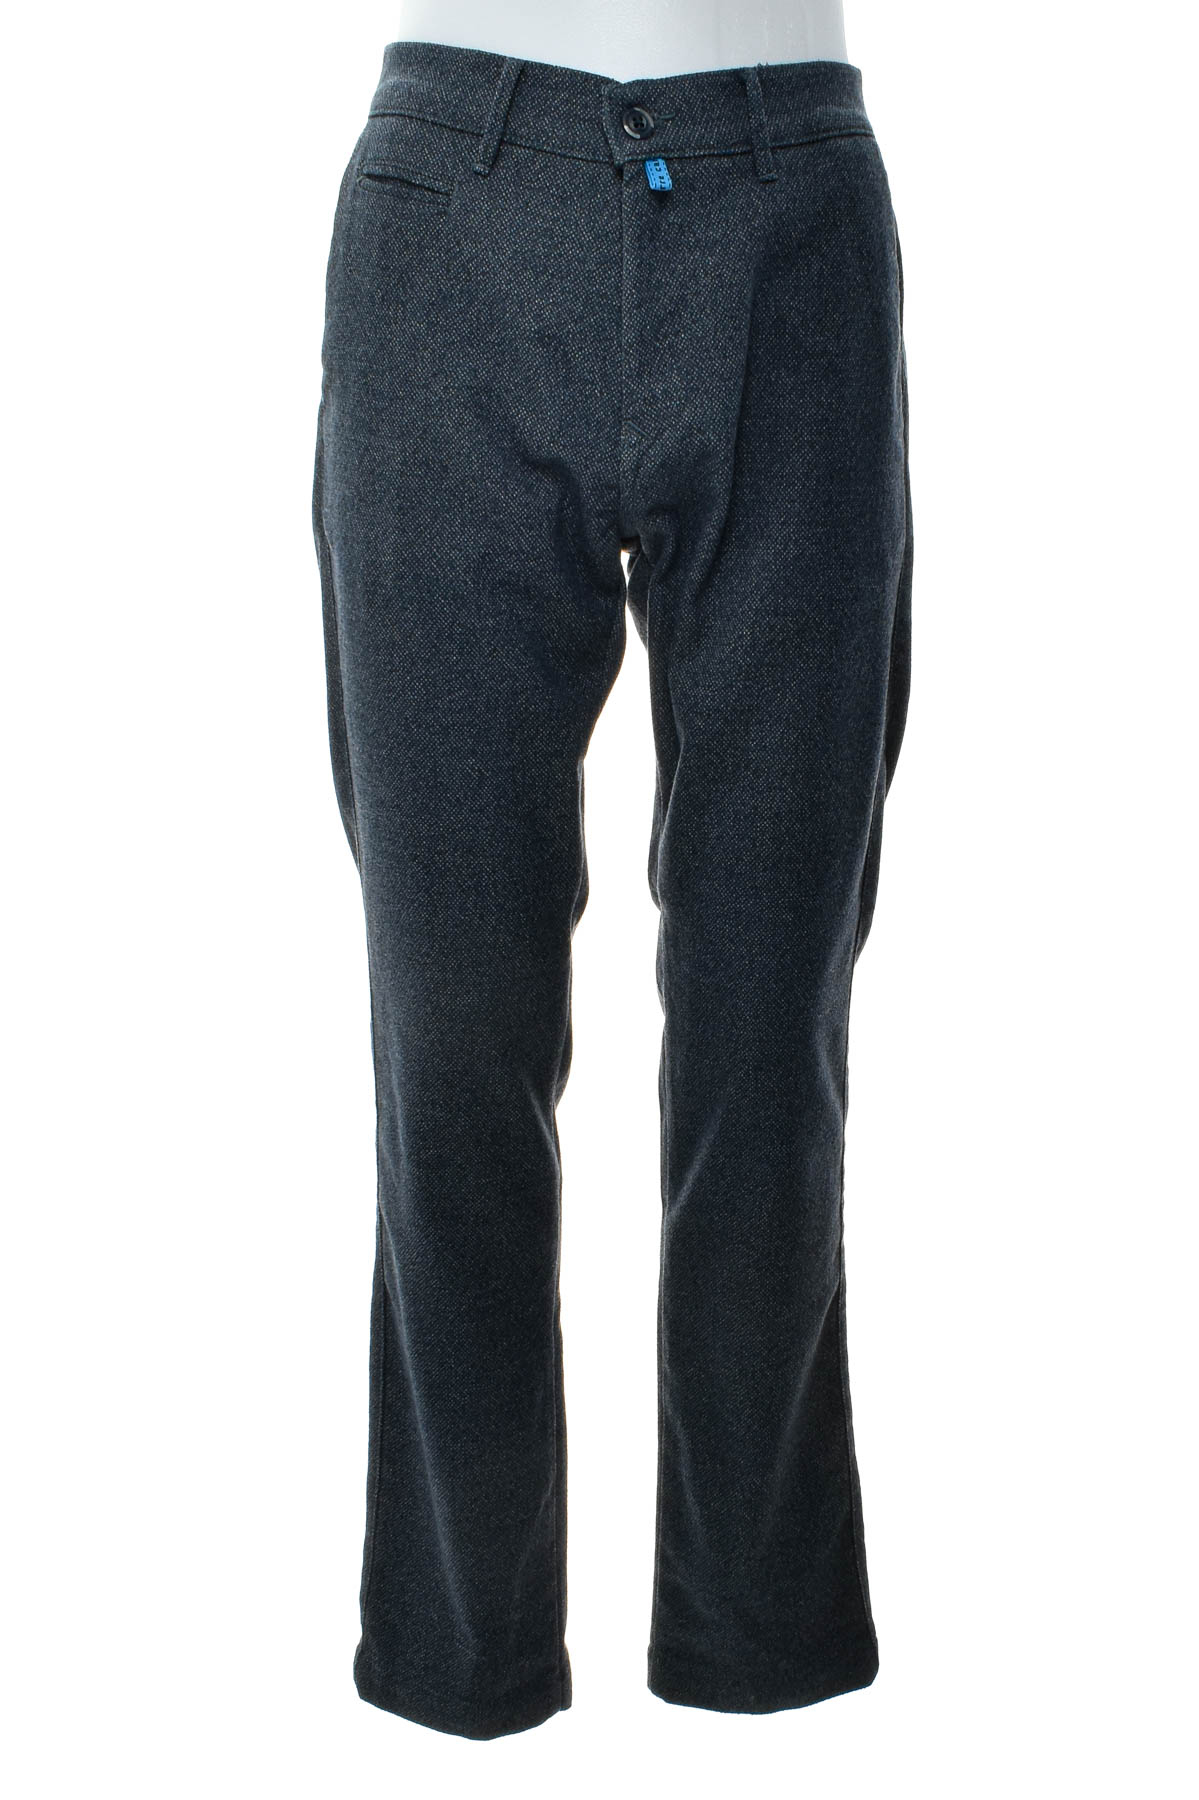 Pantalon pentru bărbați - Birmingham Wear - 0